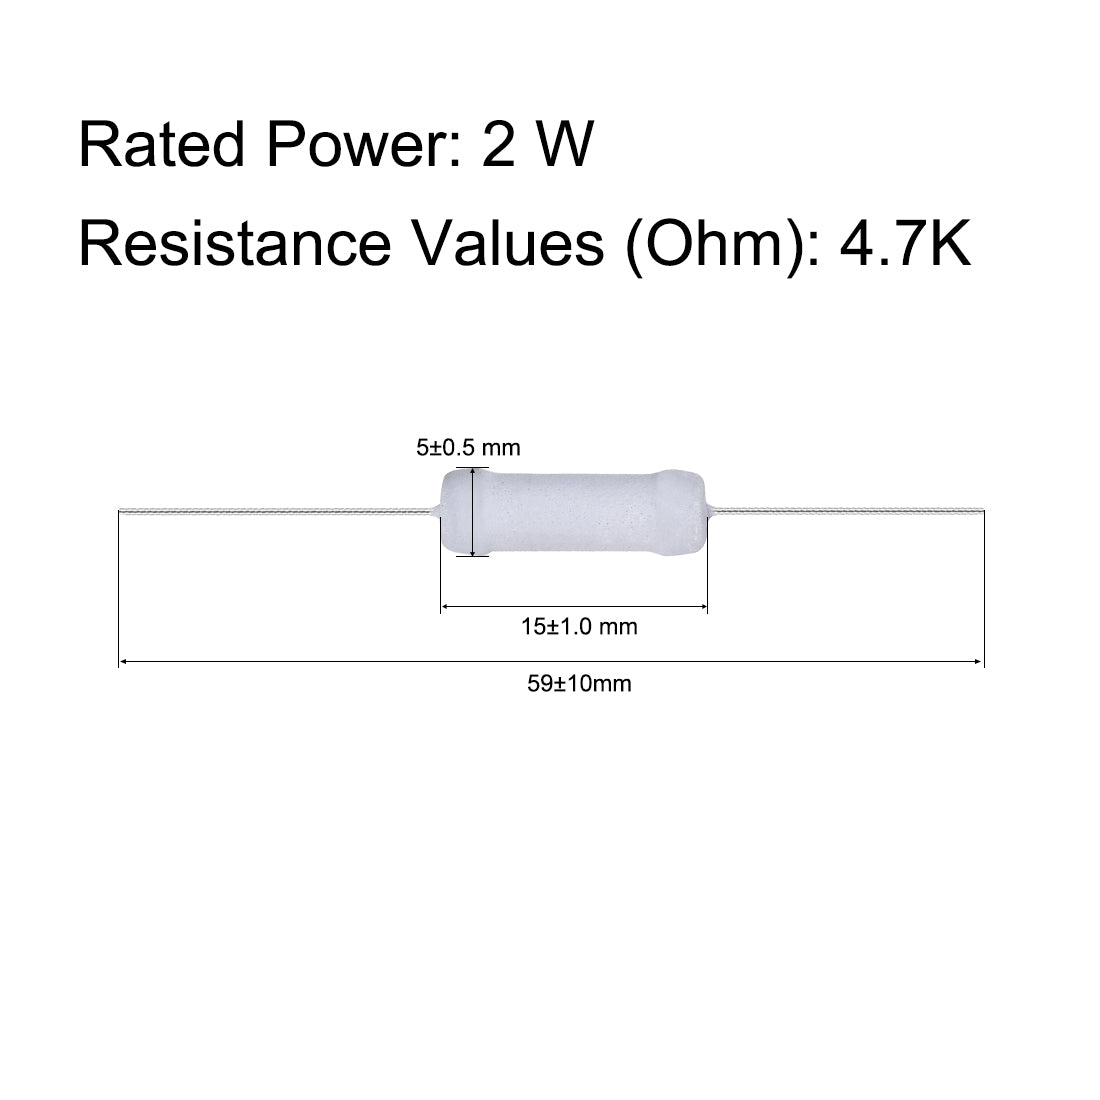 uxcell Uxcell 100pcs 2W 2 Watt Metal Oxide Film Resistor Axile Lead 4.7K Ohm ±5% Tolerance